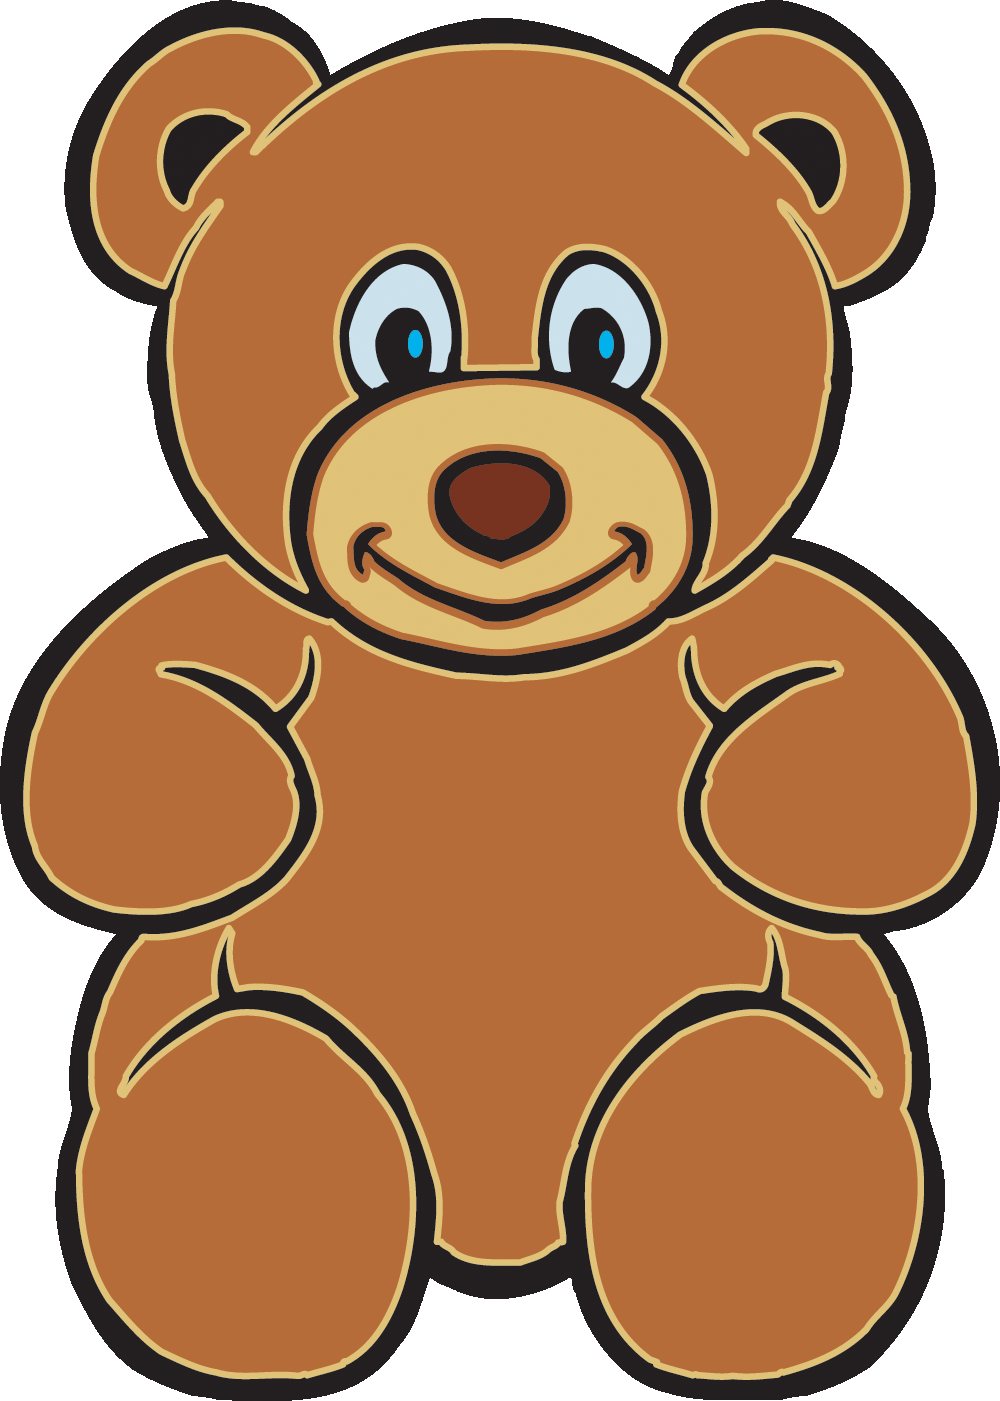 Teddy bear clip art clipartion com